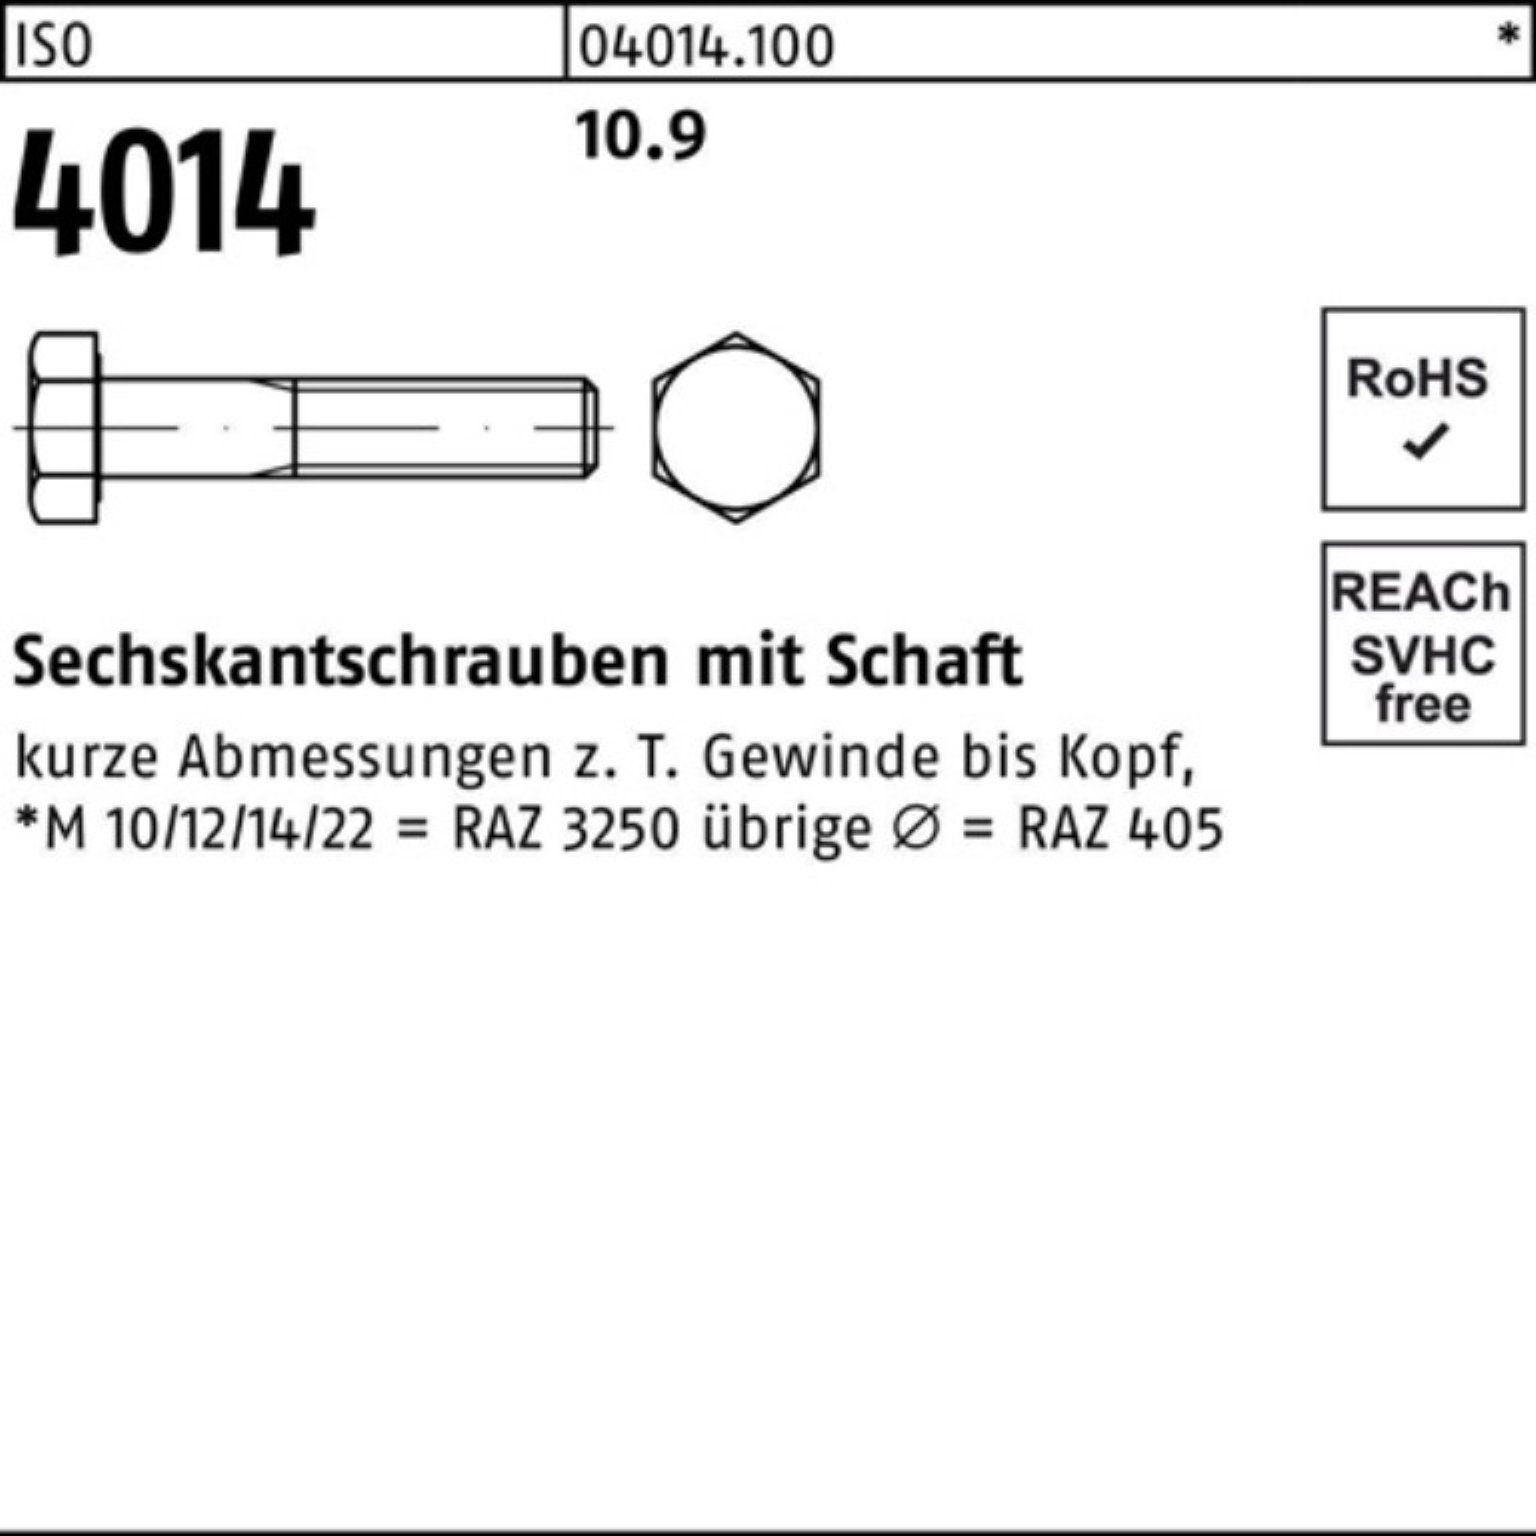 Schaft Sechskantschraube 4014 10.9 210 1 M30x Bufab ISO Sechskantschraube Pack 100er IS Stück